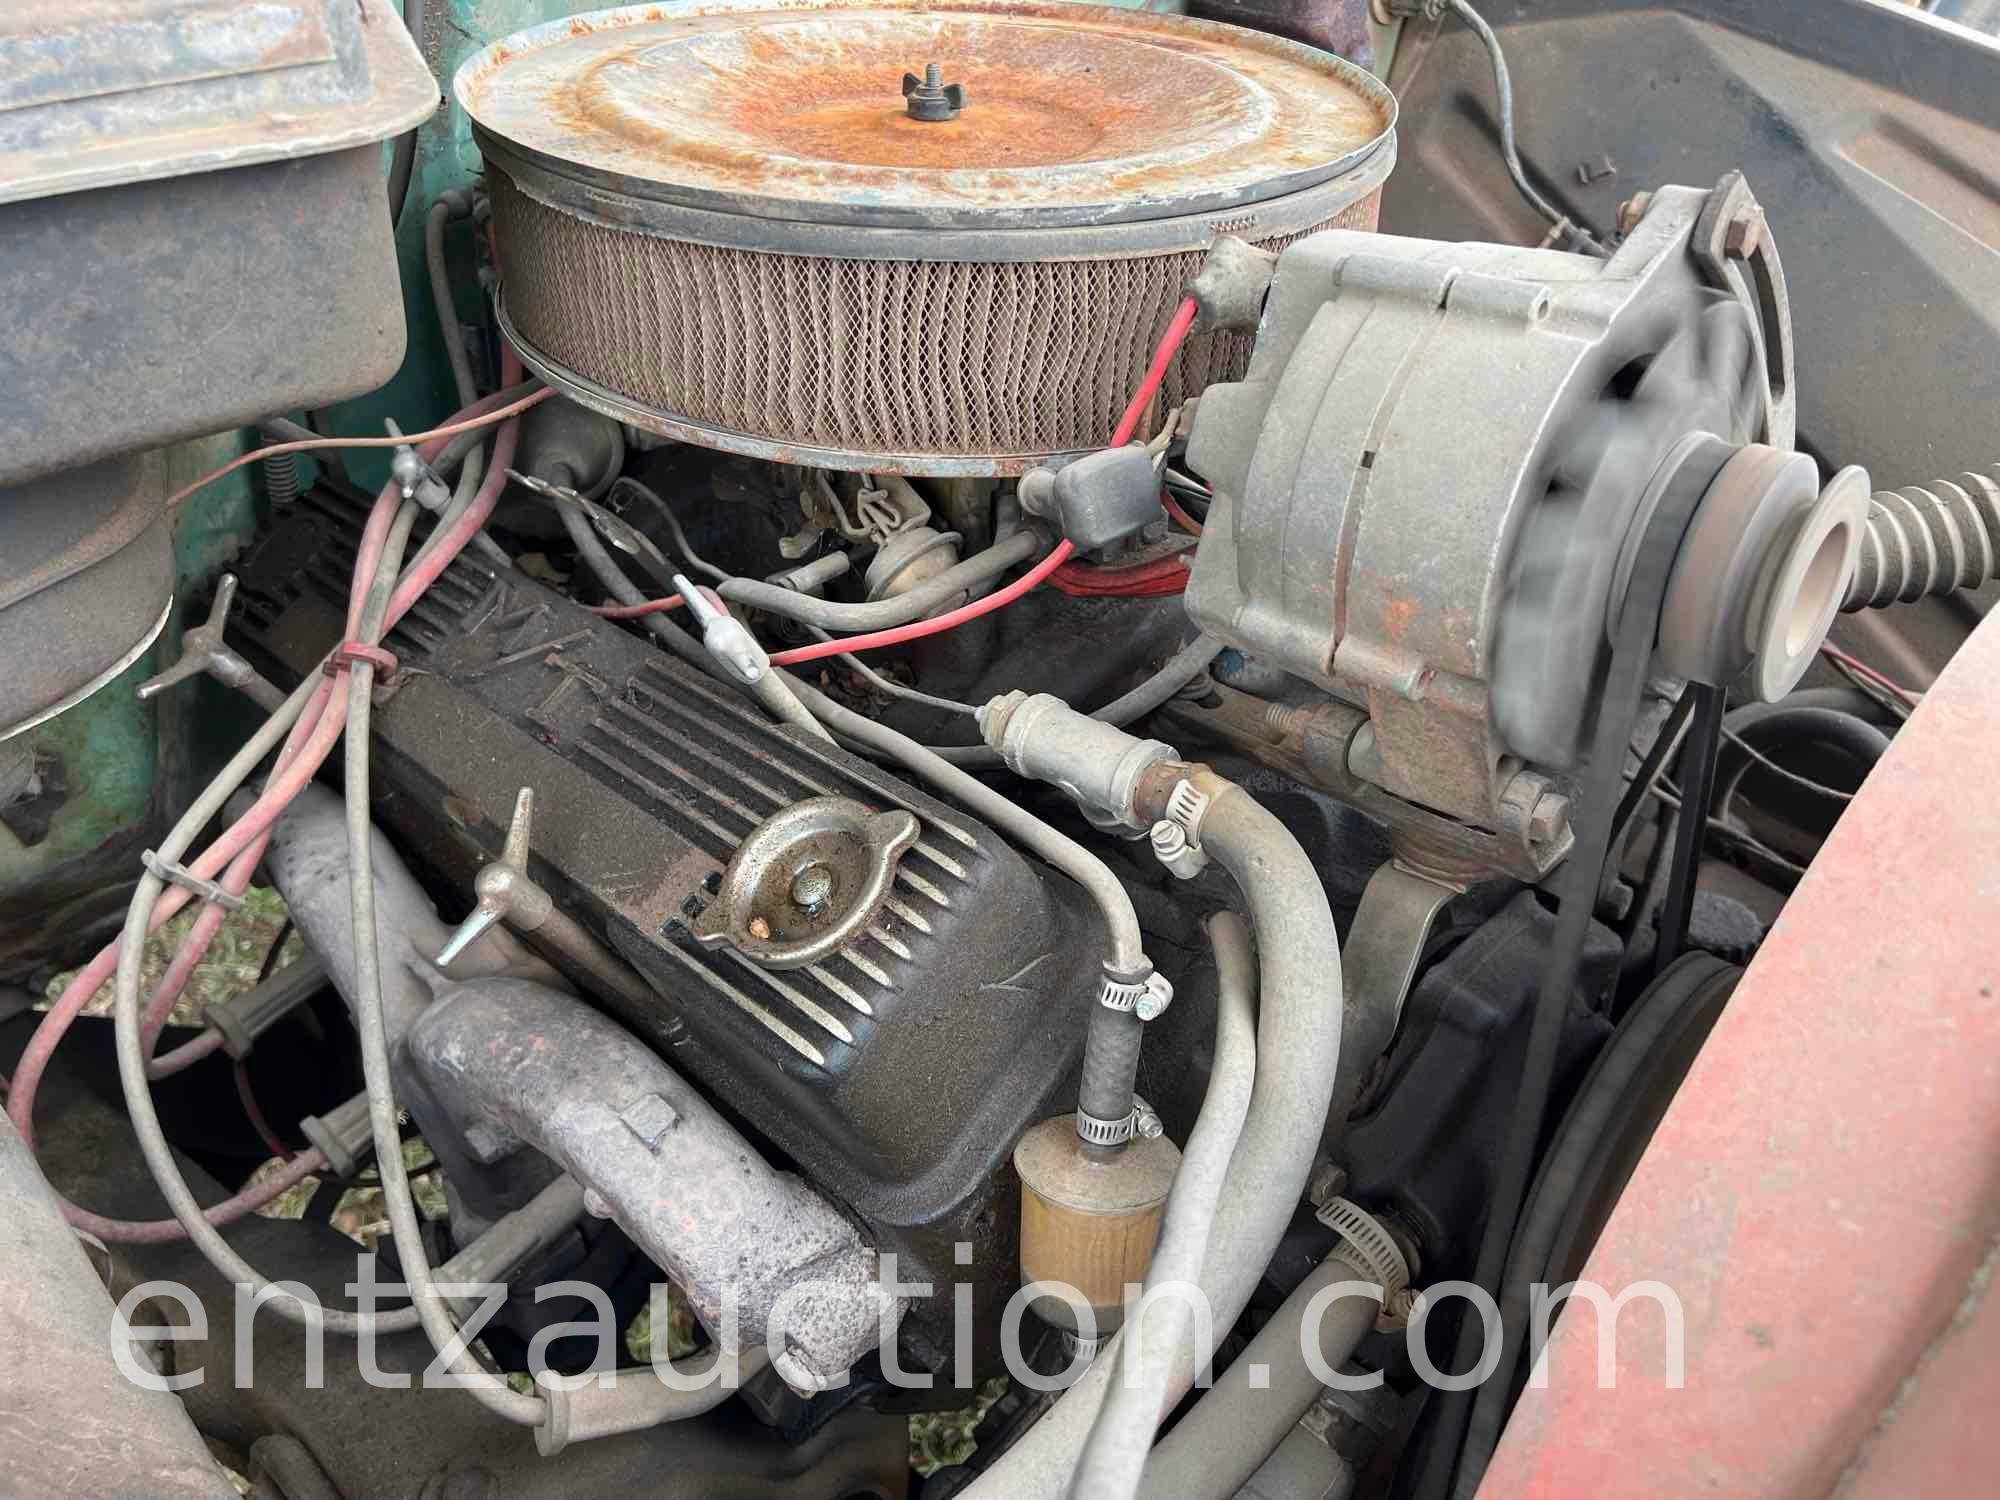 1966 CHEVY C30 TRUCK, 350 ENGINE, 4 SPEED TRANS.,